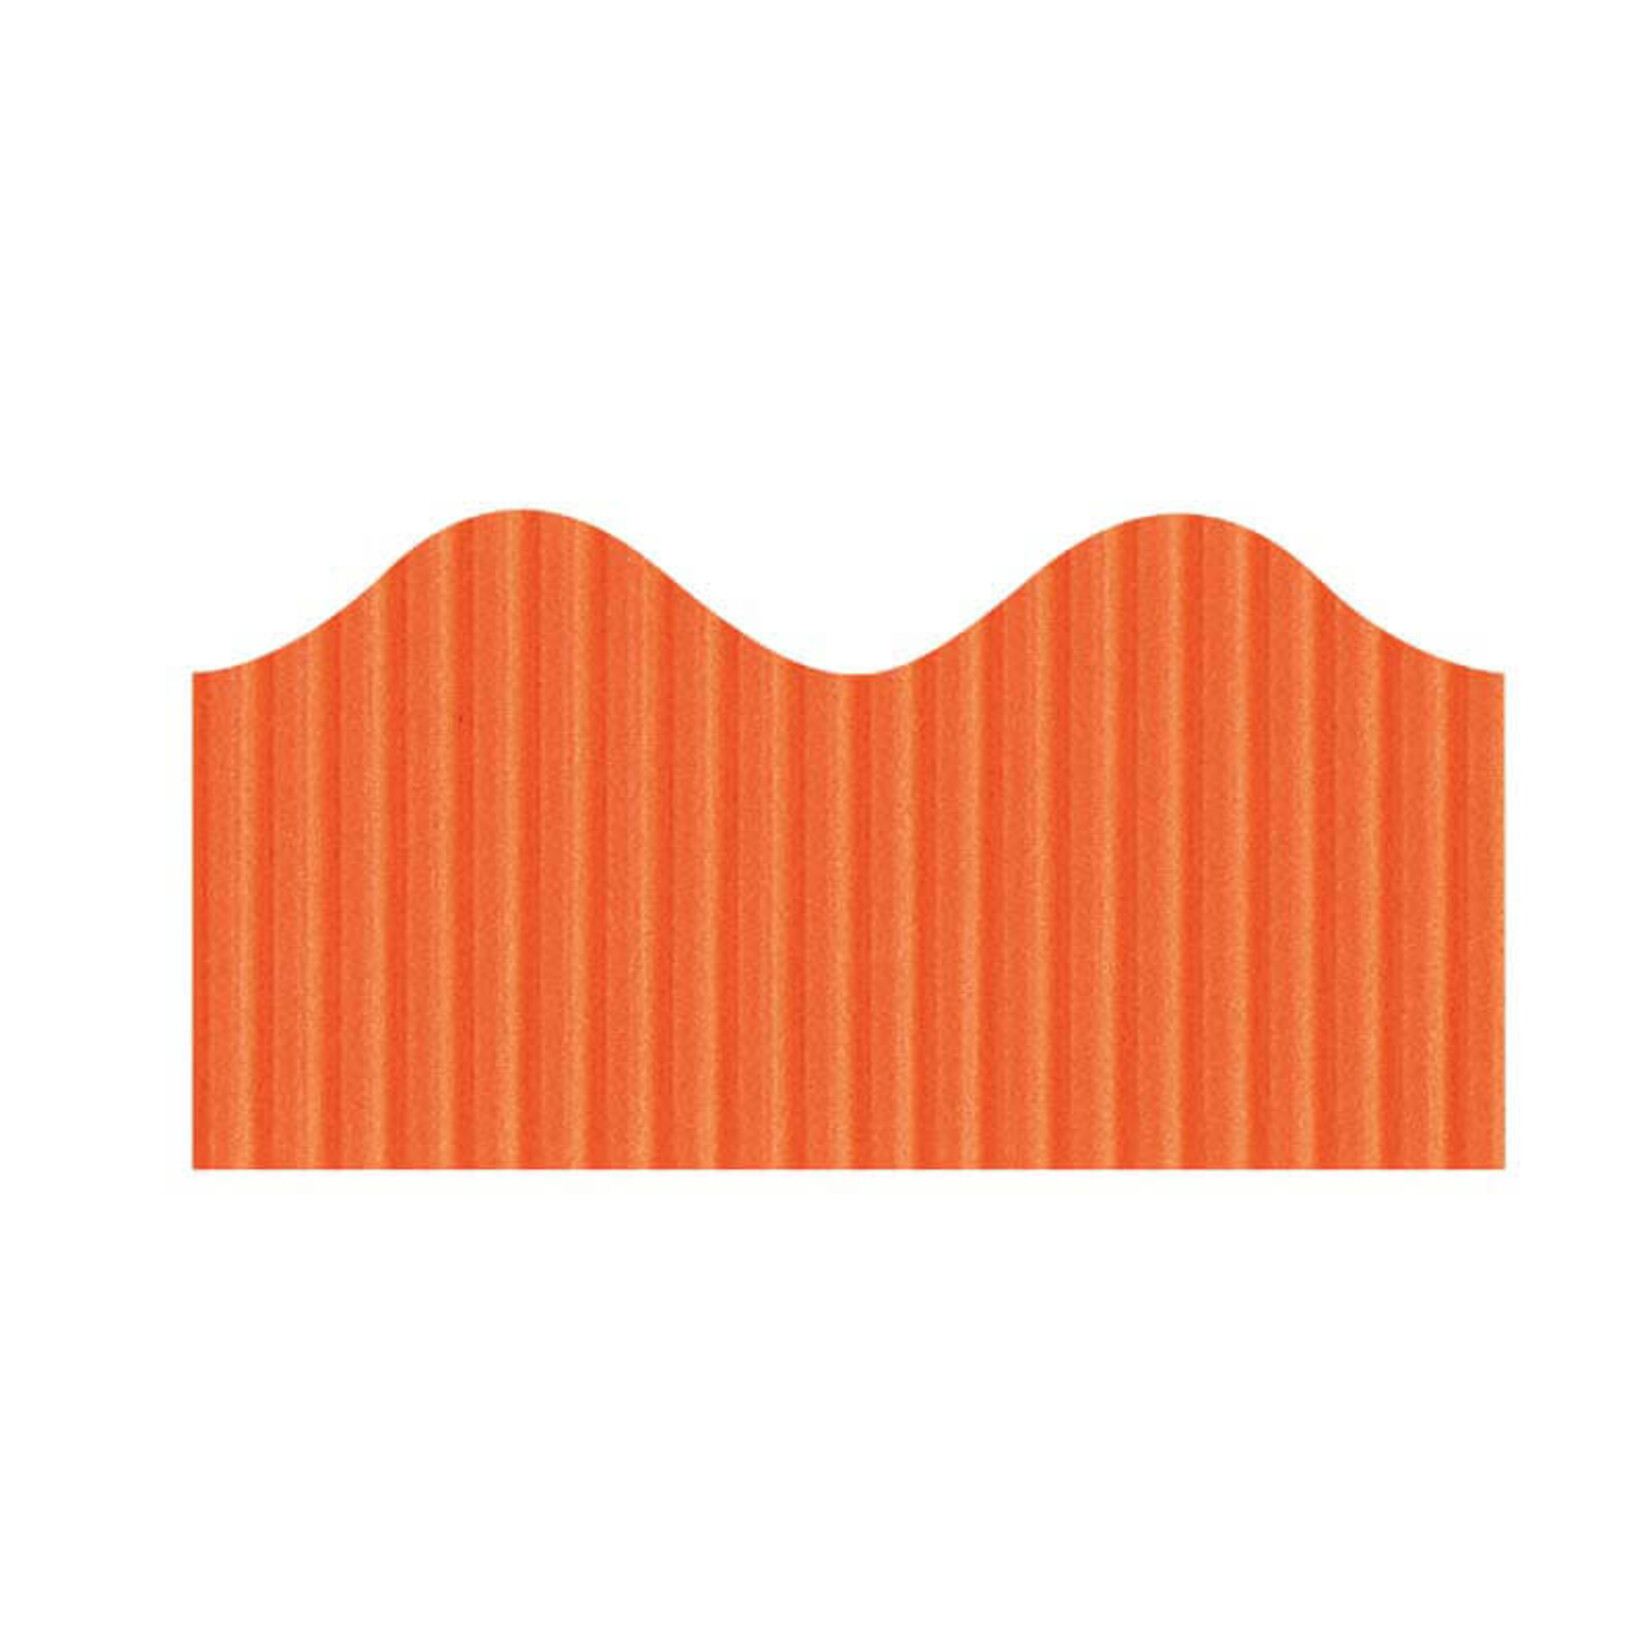 DIXON TICONDEROGA COMPANY Bordette® Decorative Border Orange